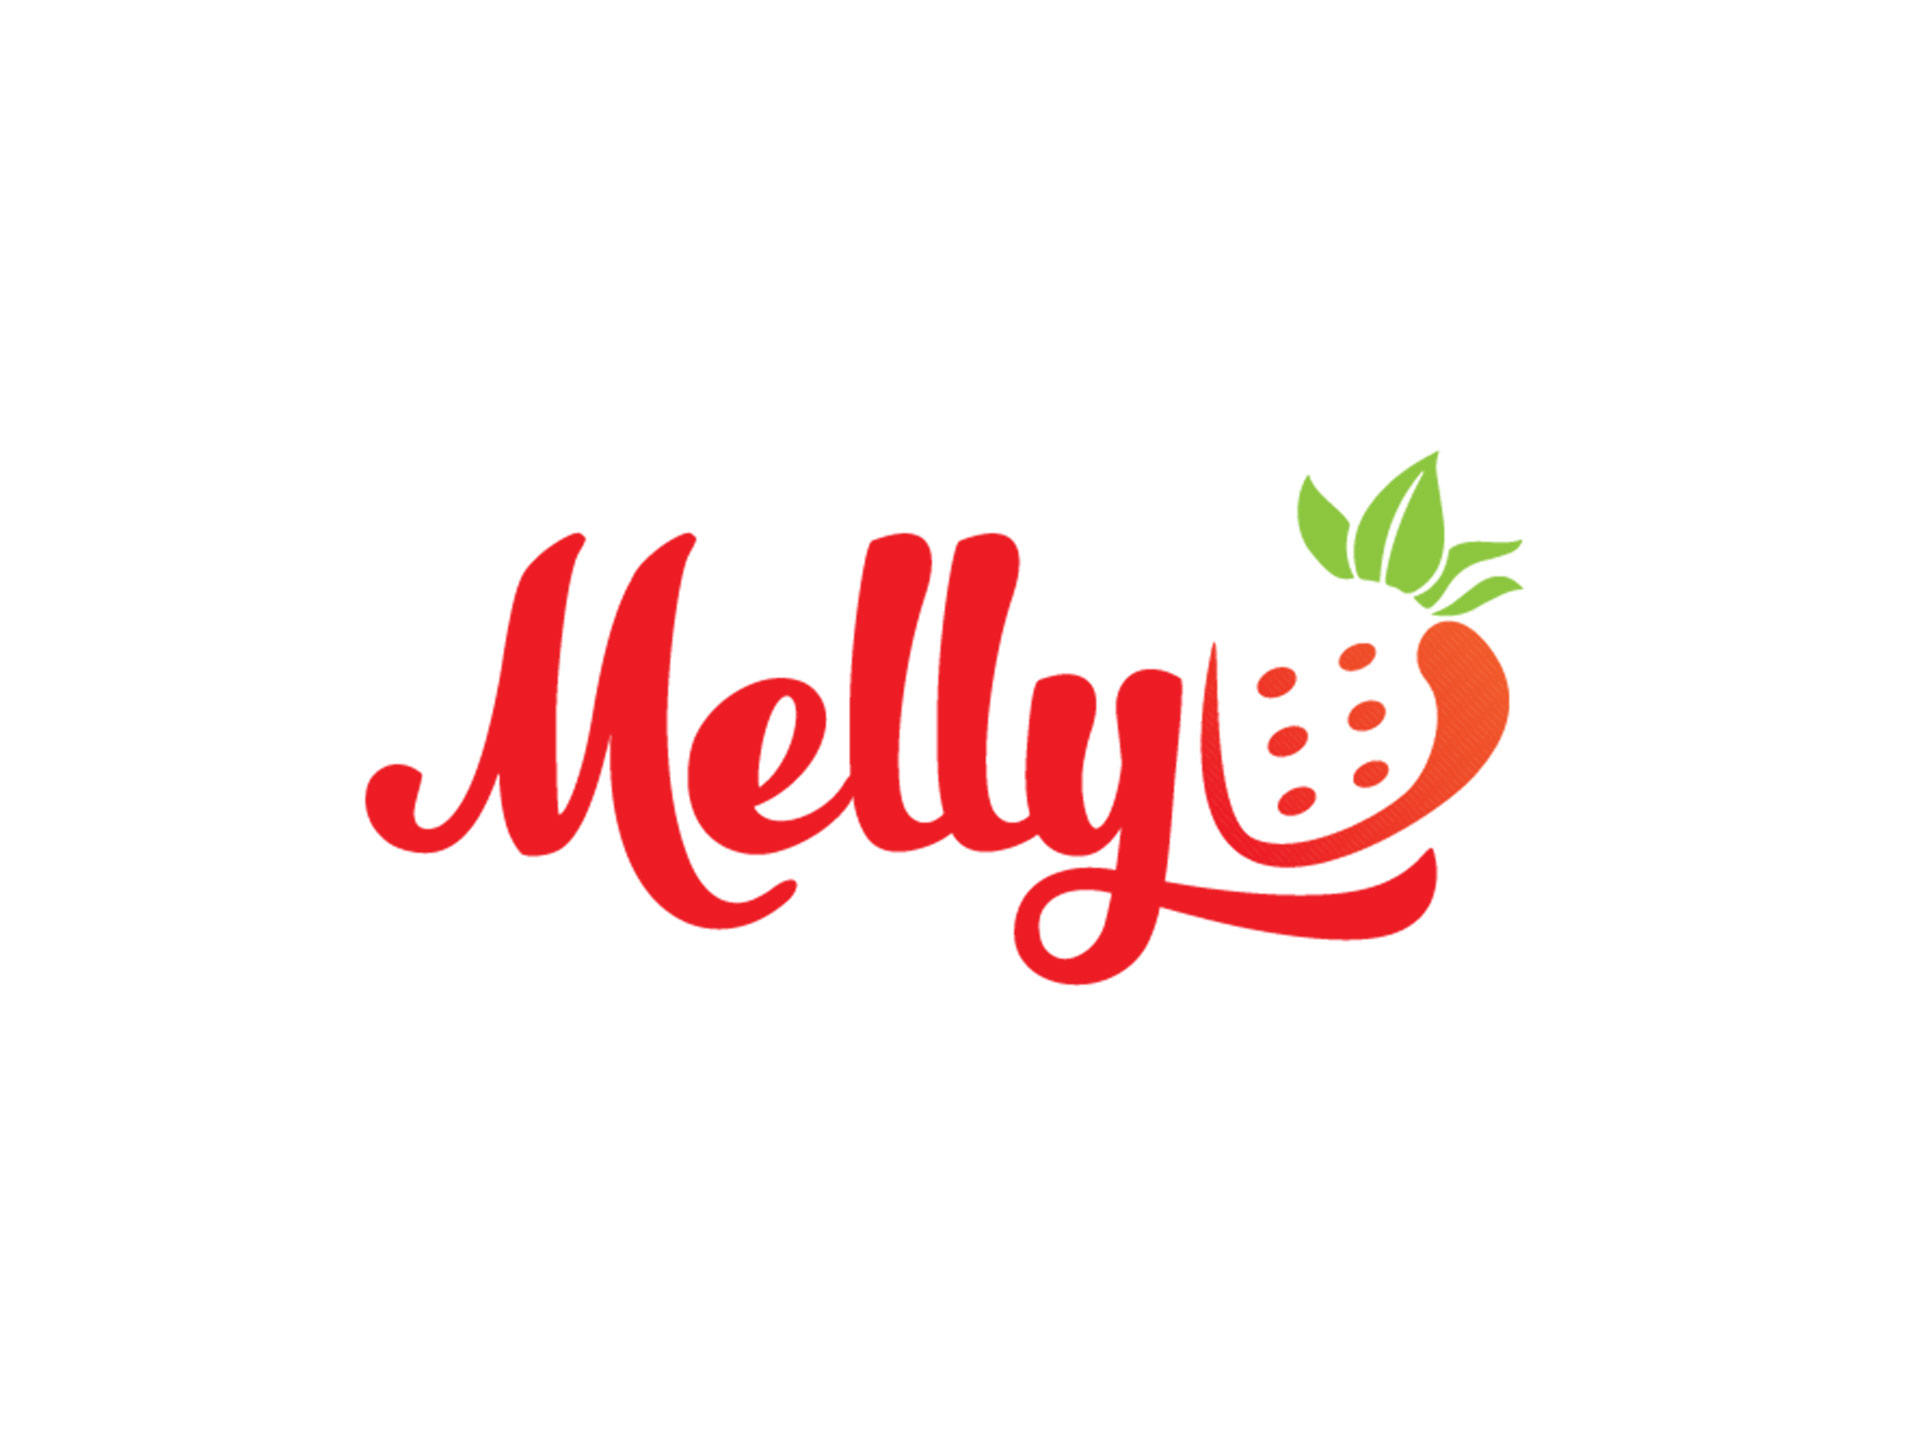 Đặt tên, thiết kế logo và bao bì cho nhãn hàng Melly tại TP HCM